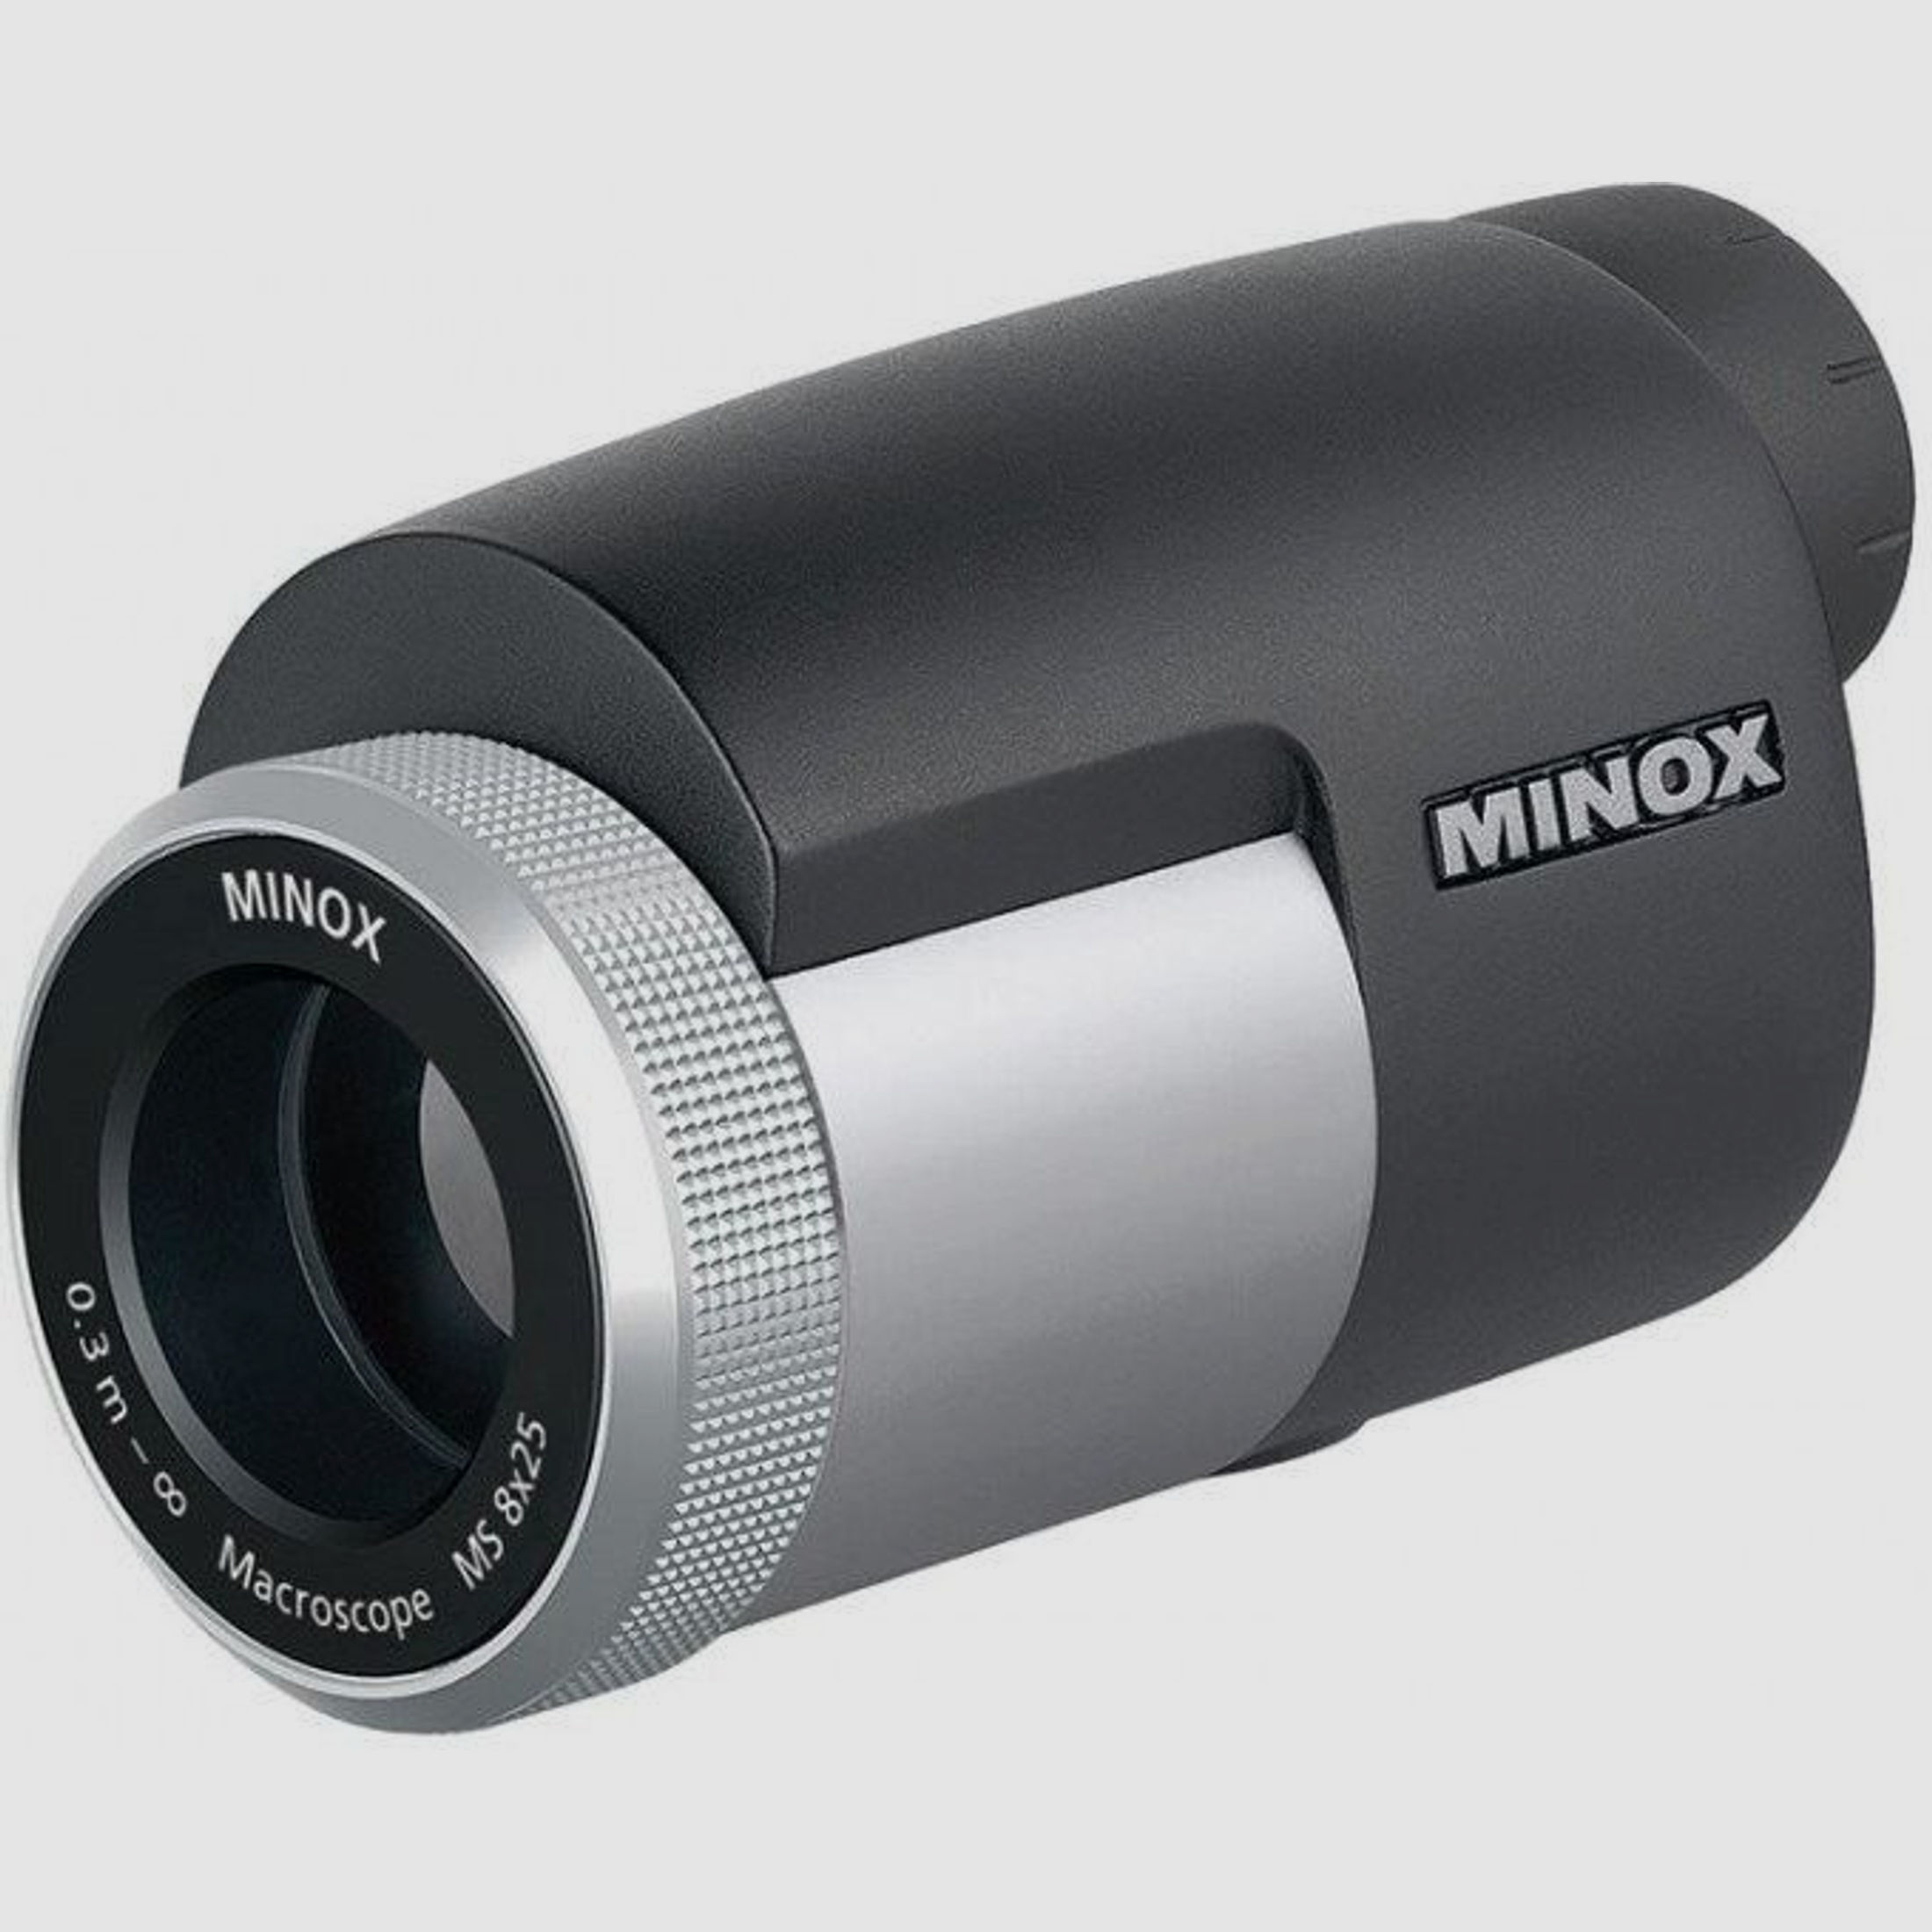 Minox MS 8x25 Macroscope Silber/Schwarz